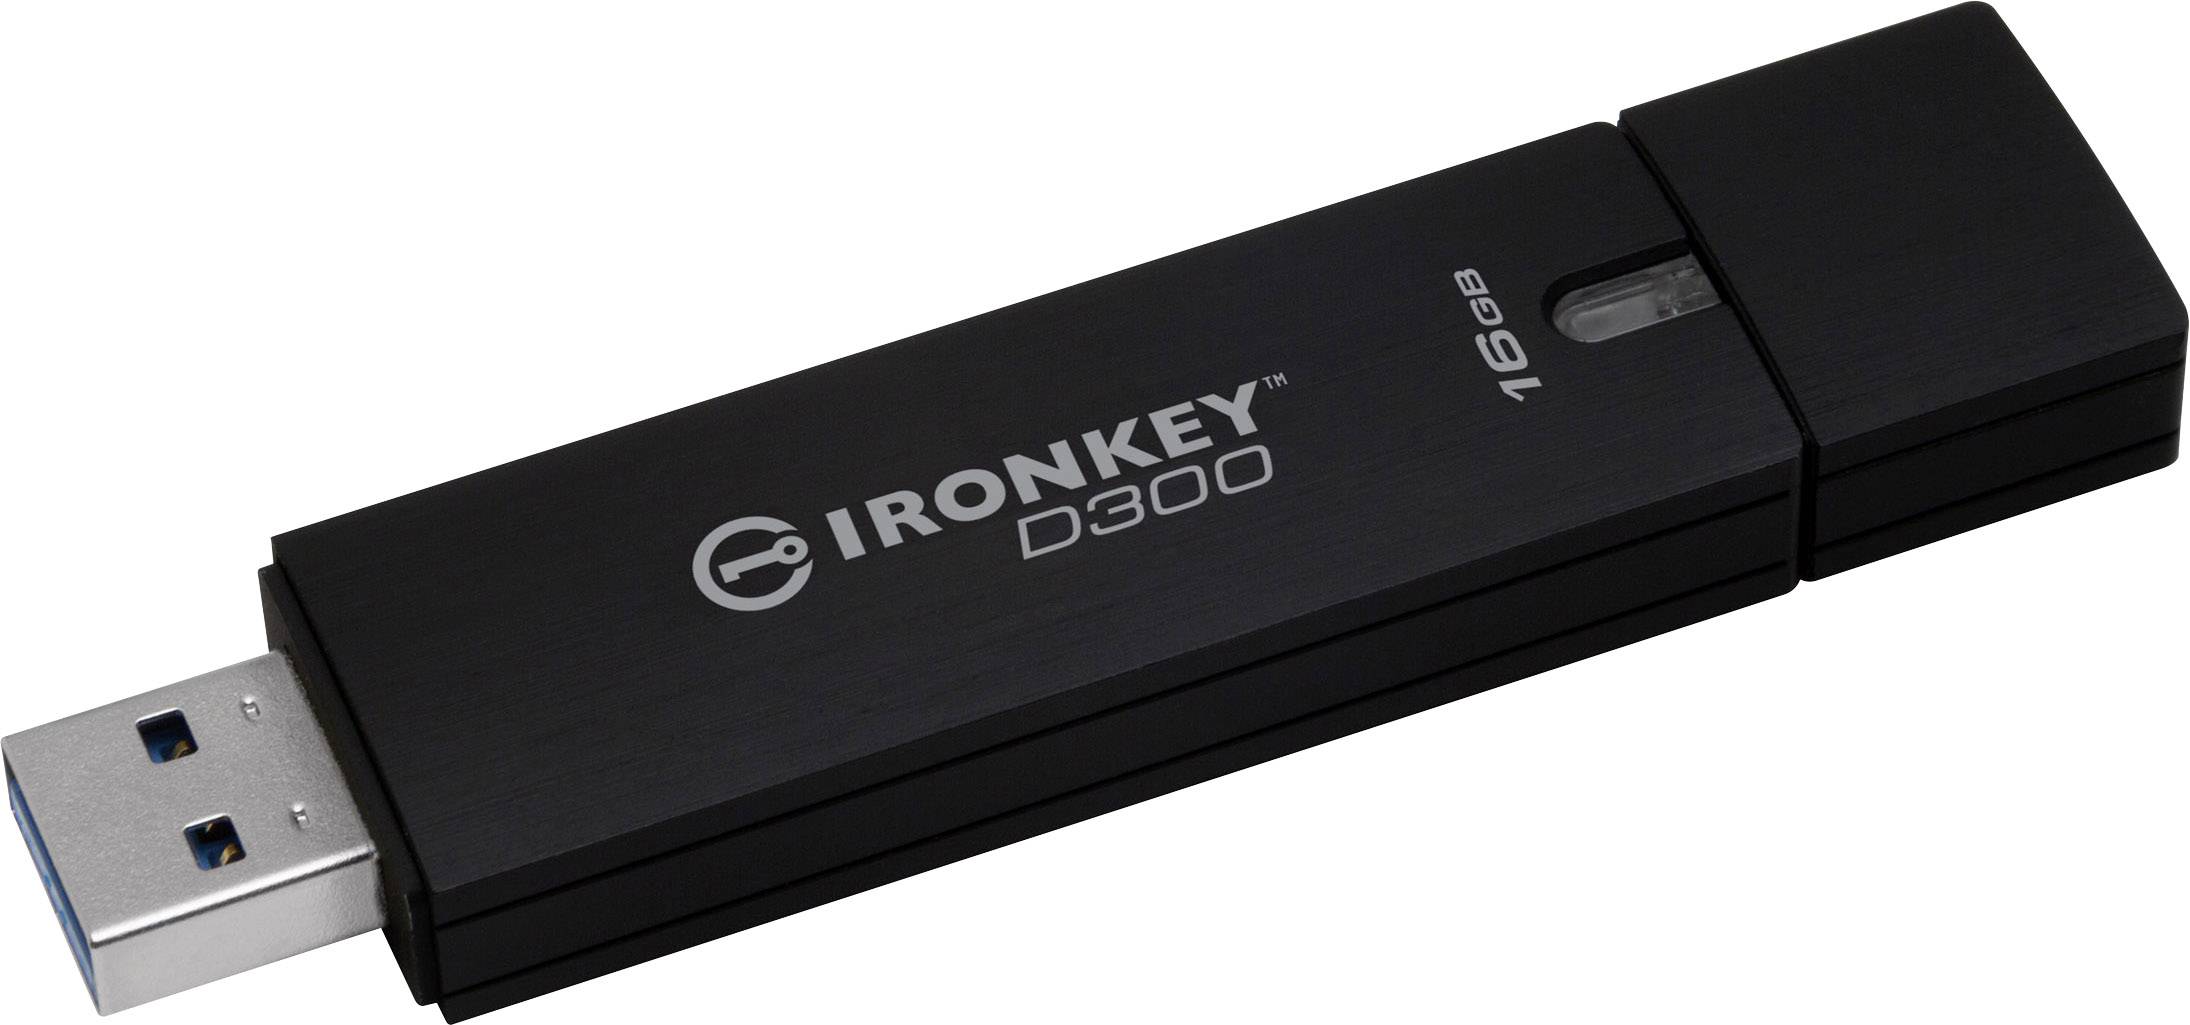 desirable swing appetite Kingston IronKey™ D300 USB stick 16 GB Black IKD300/16GB USB 3.2 1st Gen  (USB 3.0) | Conrad.com